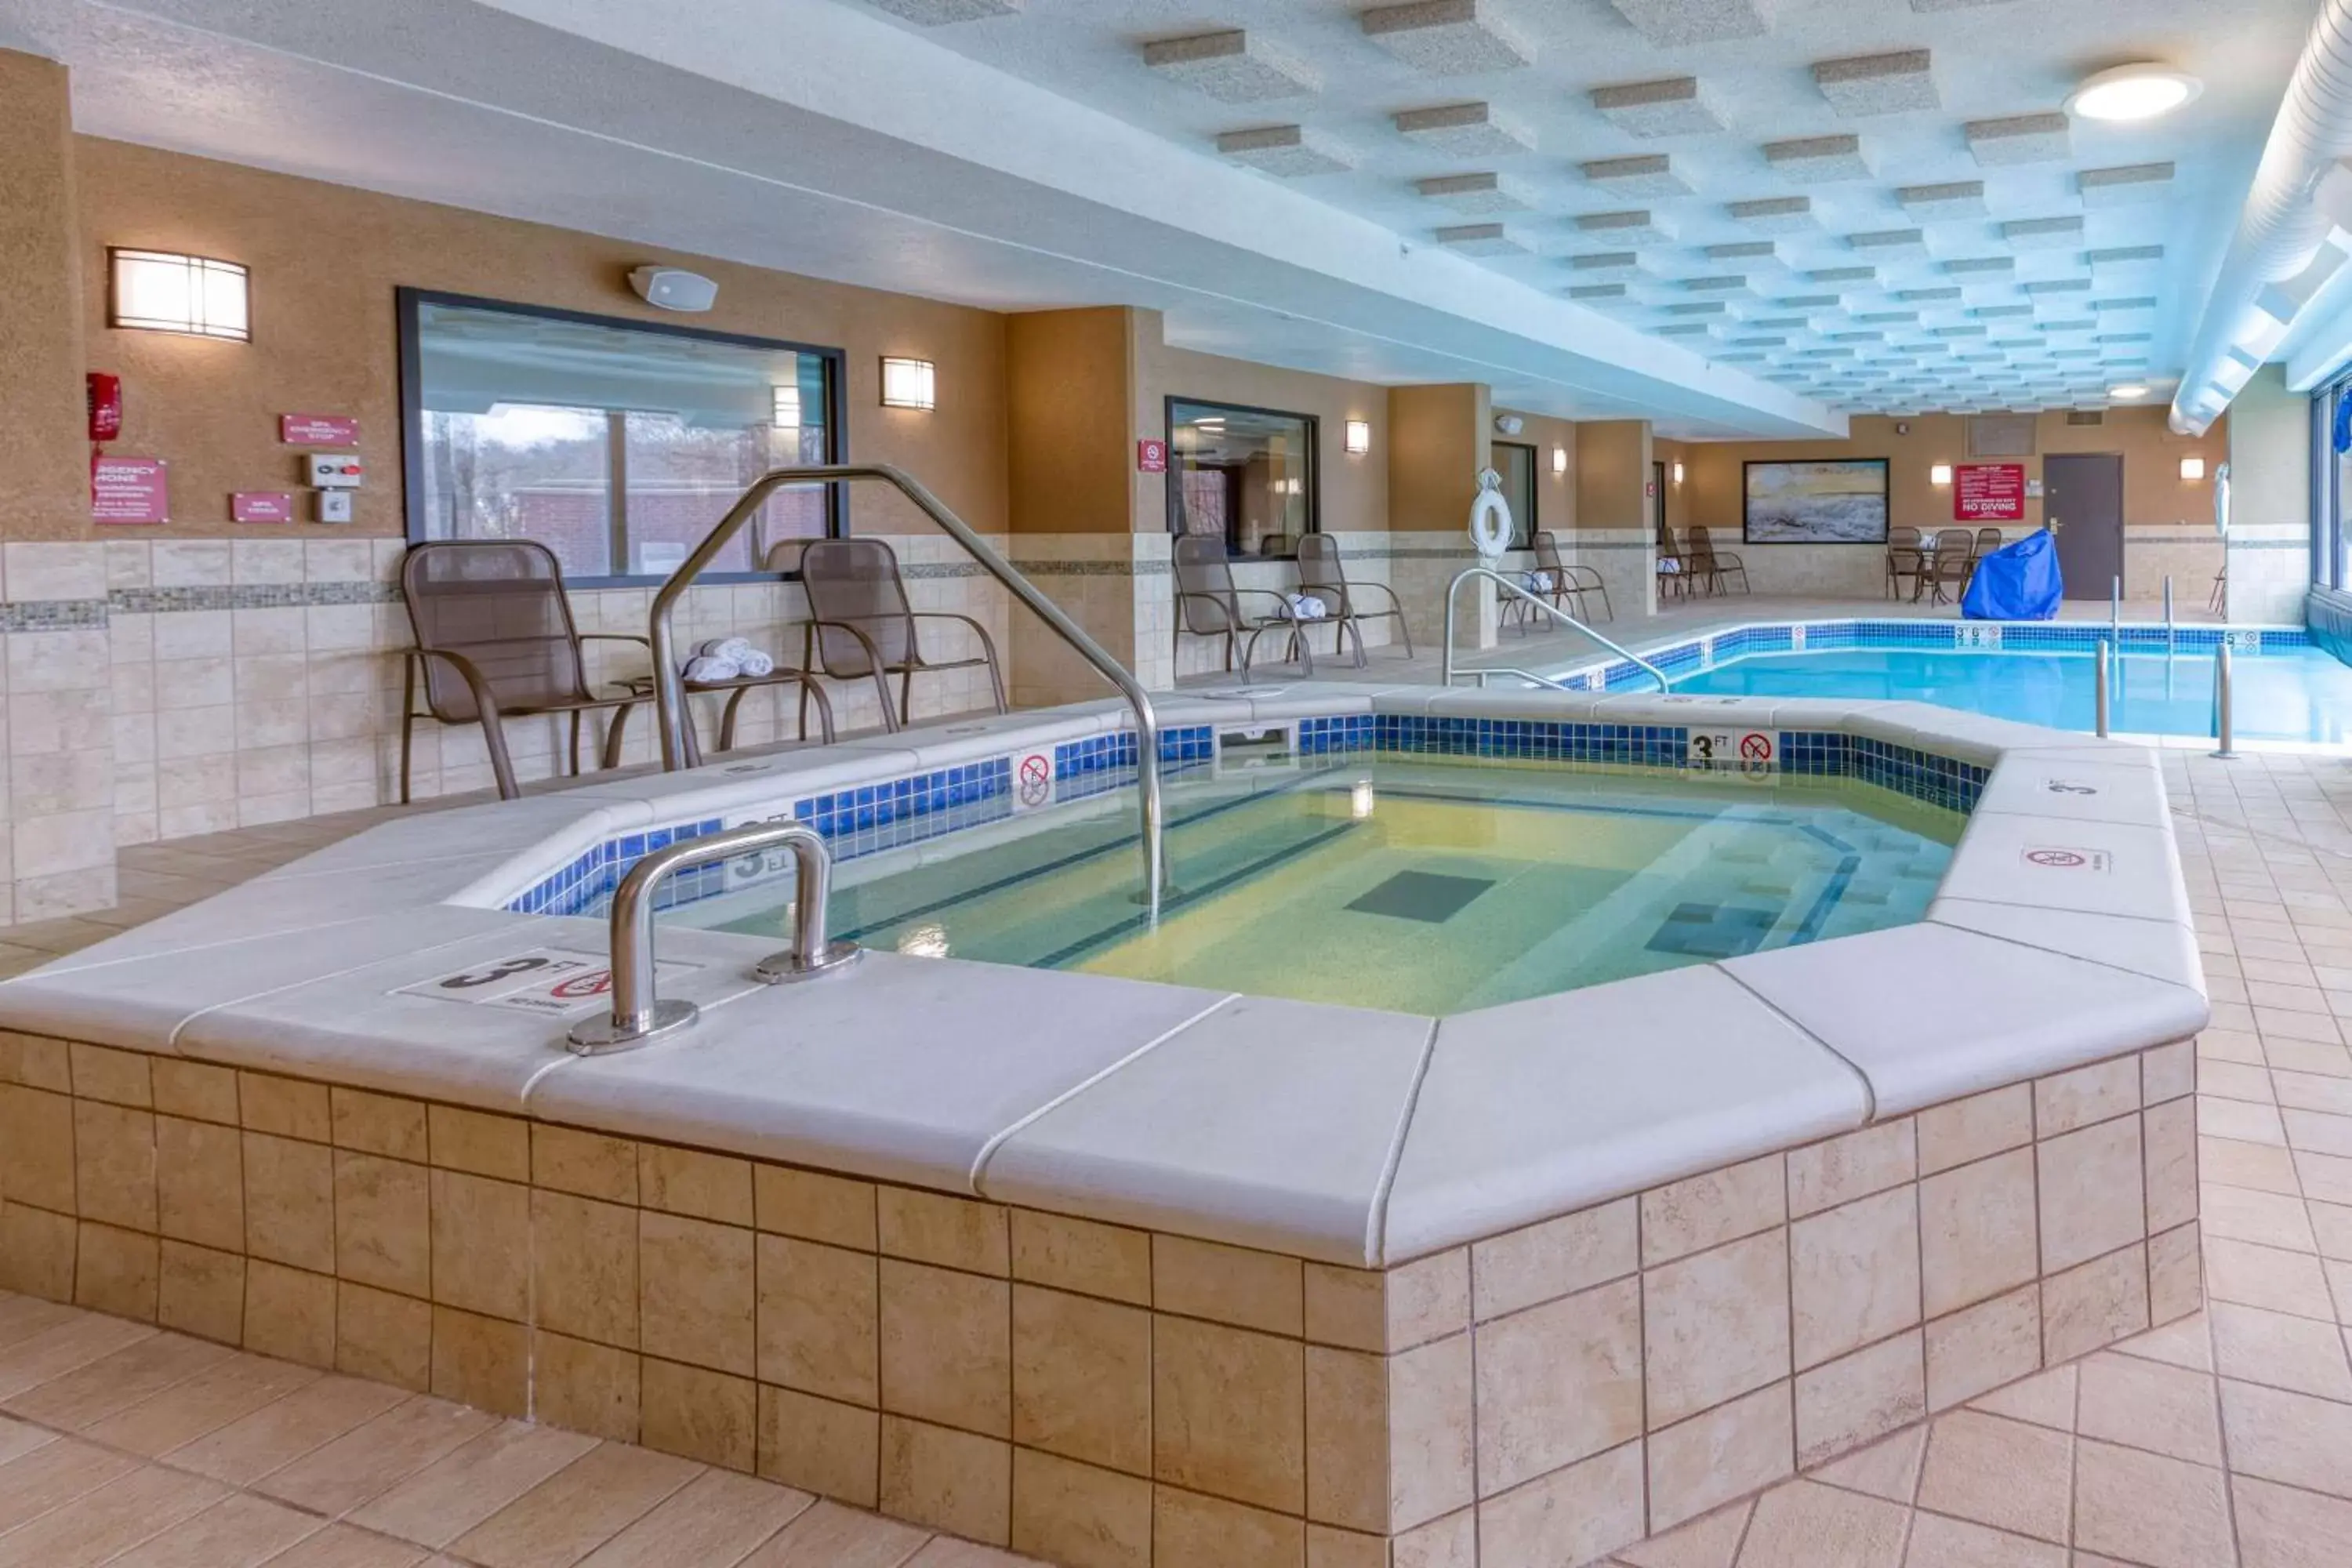 Activities, Swimming Pool in Drury Inn & Suites St. Louis Fenton